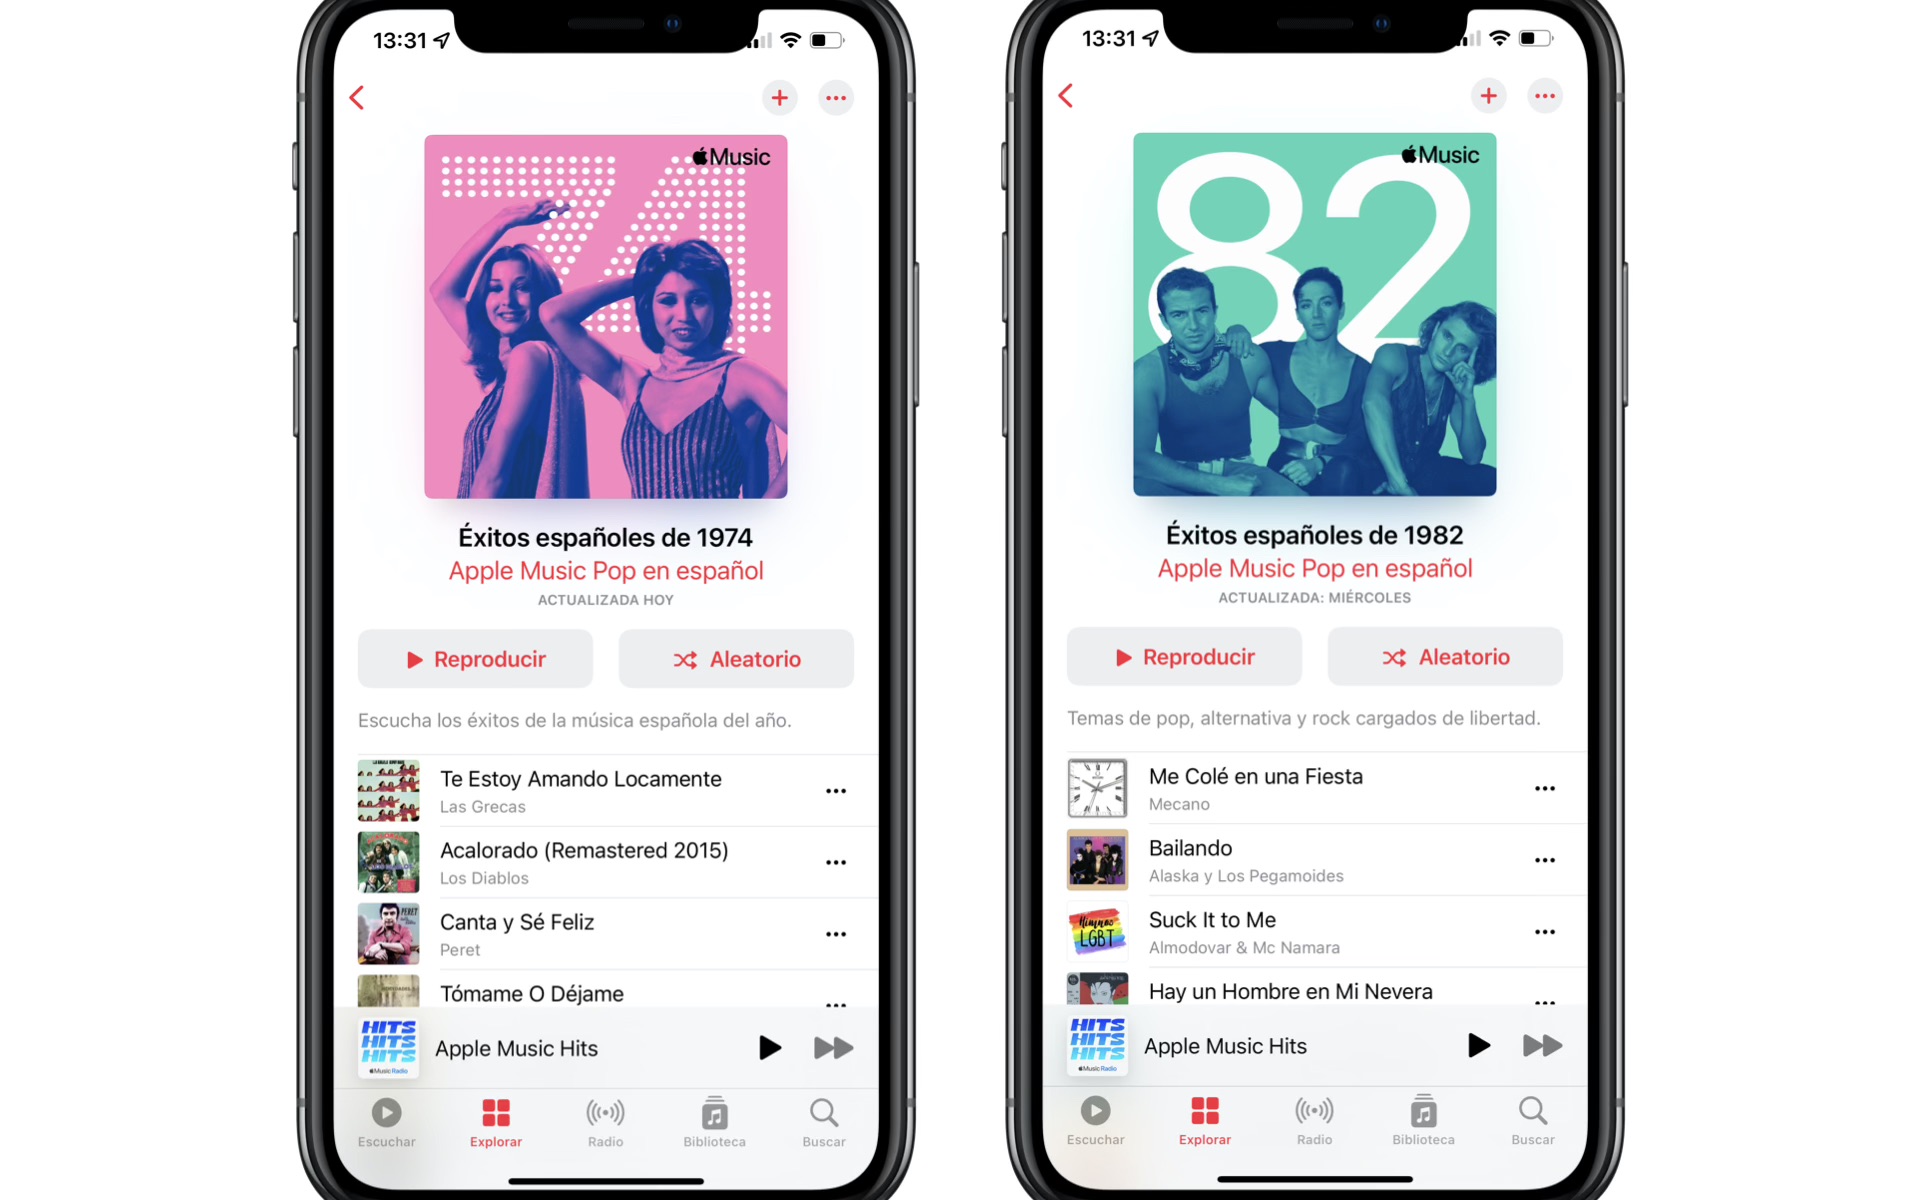 Apple Music: Día de la Música, playlists del Pop Español